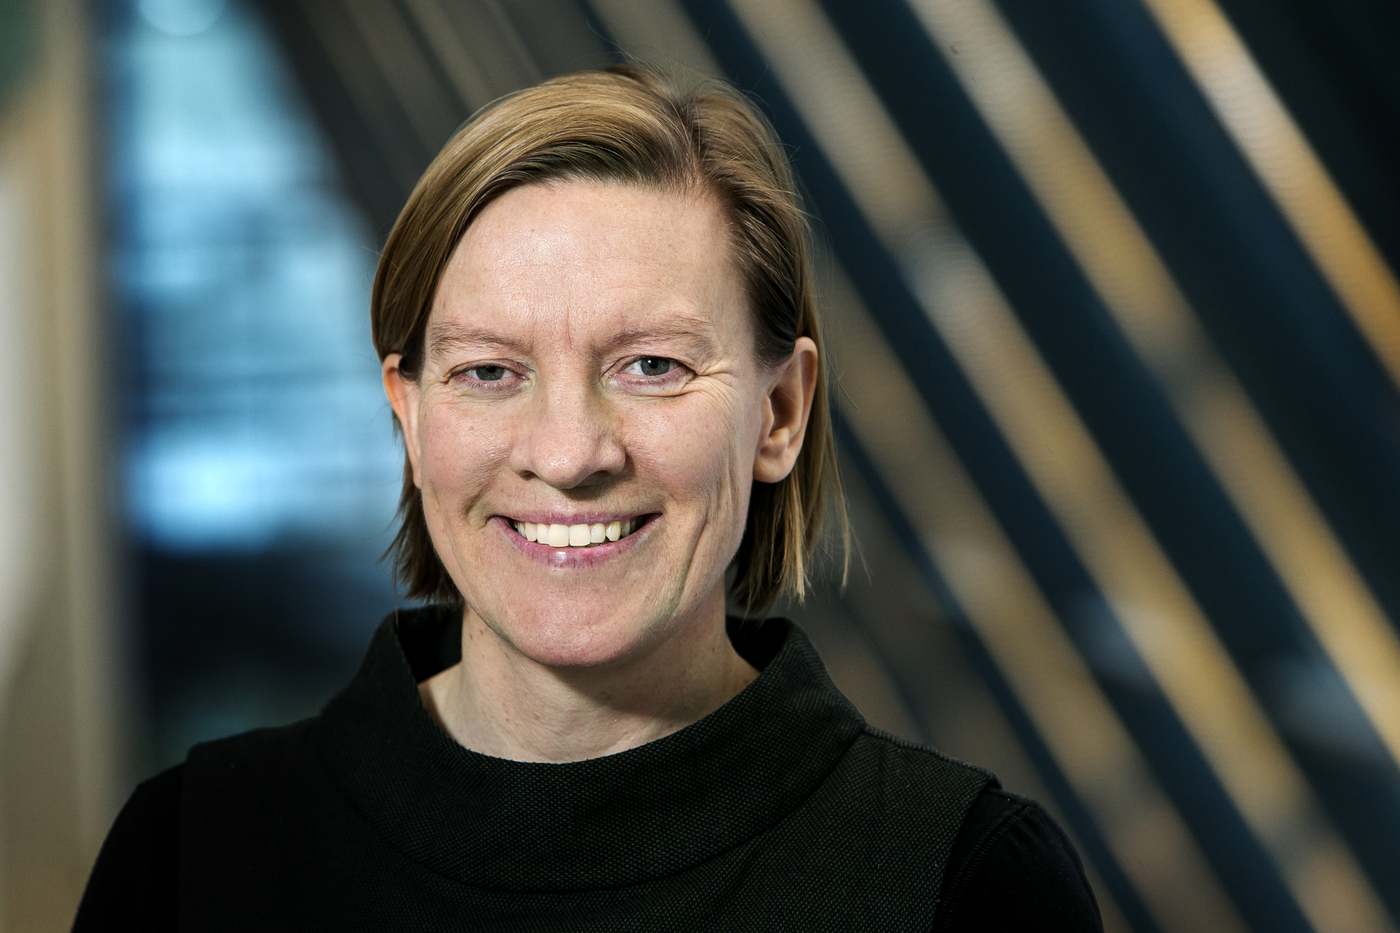 Guðfinna Aðalgeirsdóttir, professor of glaciology at the University of Iceland